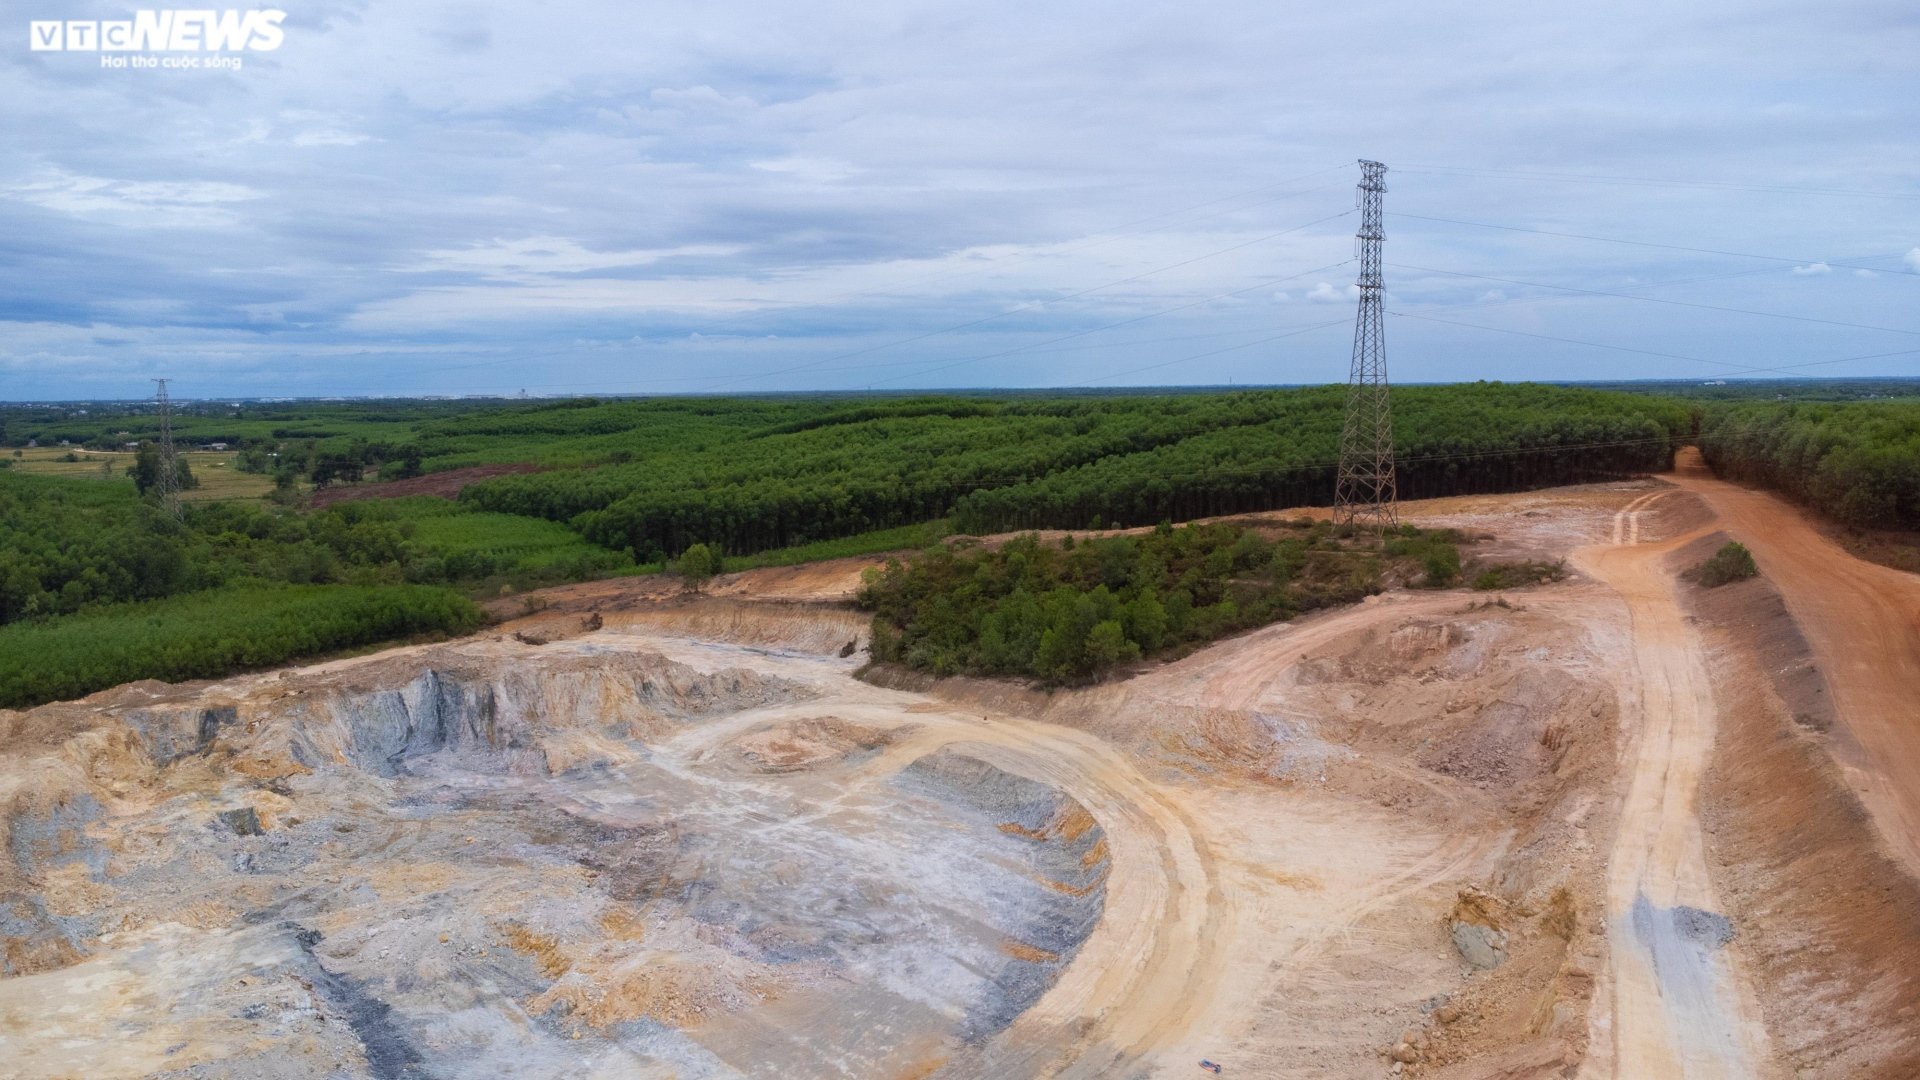 Thâm nhập đại công trường khai thác khoáng sản sai phép ở Thừa Thiên - Huế - Ảnh 10.